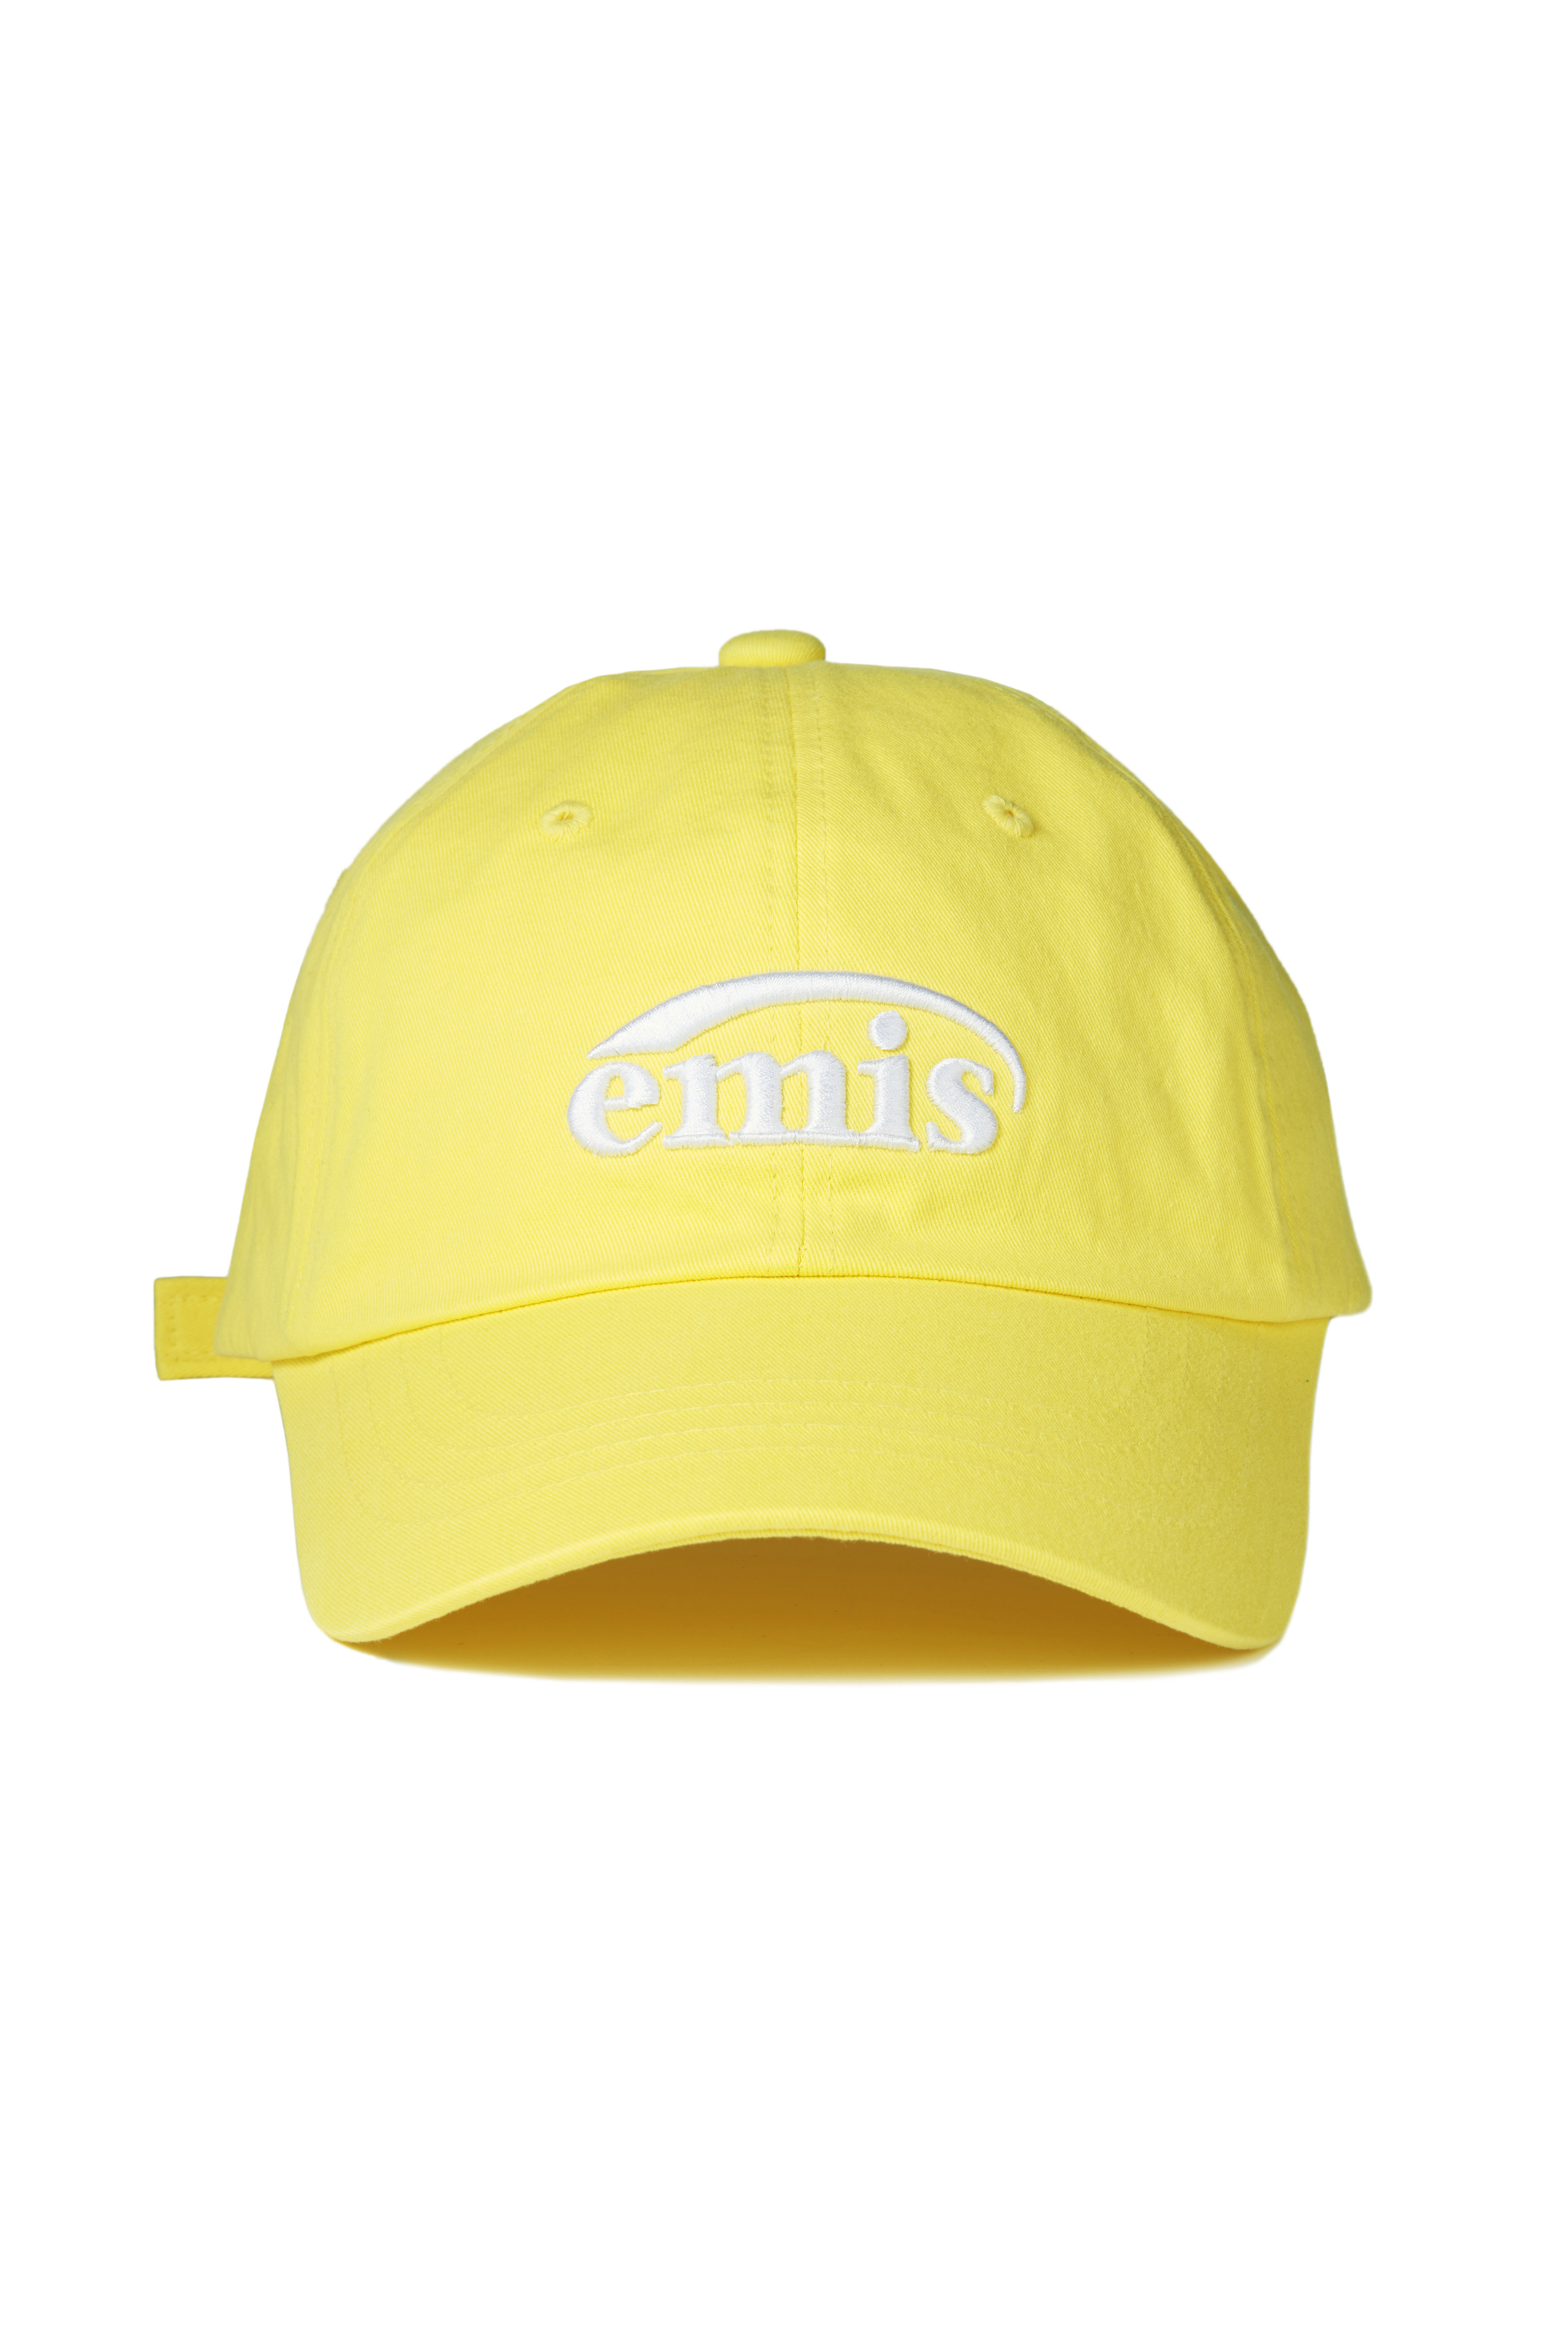 ❗🇰🇷韓國正版❗ emis 帽子 EMIS字母刺繡 新LOGO 休閒可調節棒球帽 （6色可選）